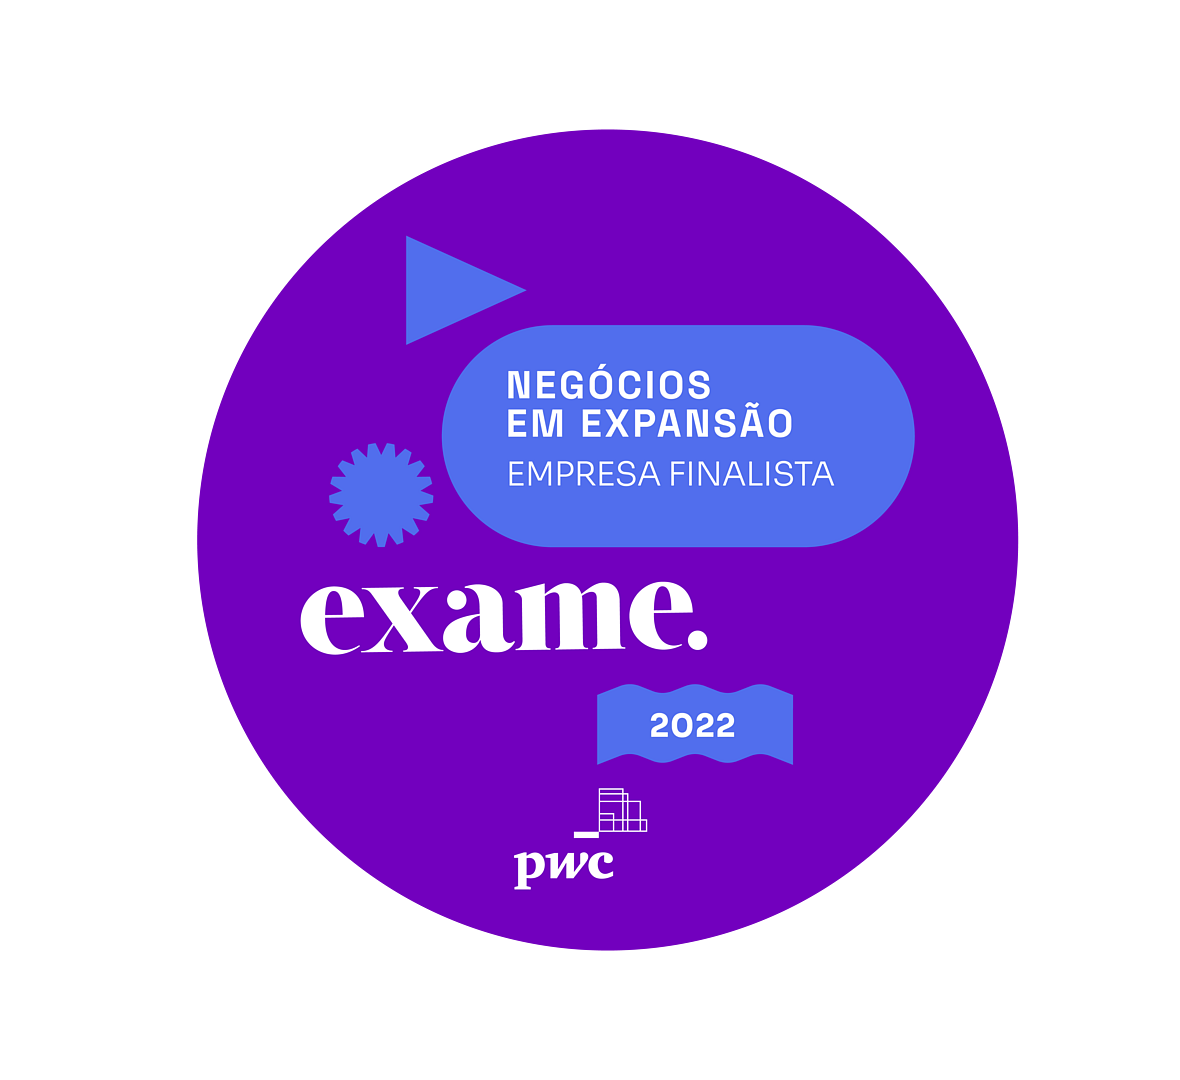 Exame Logo